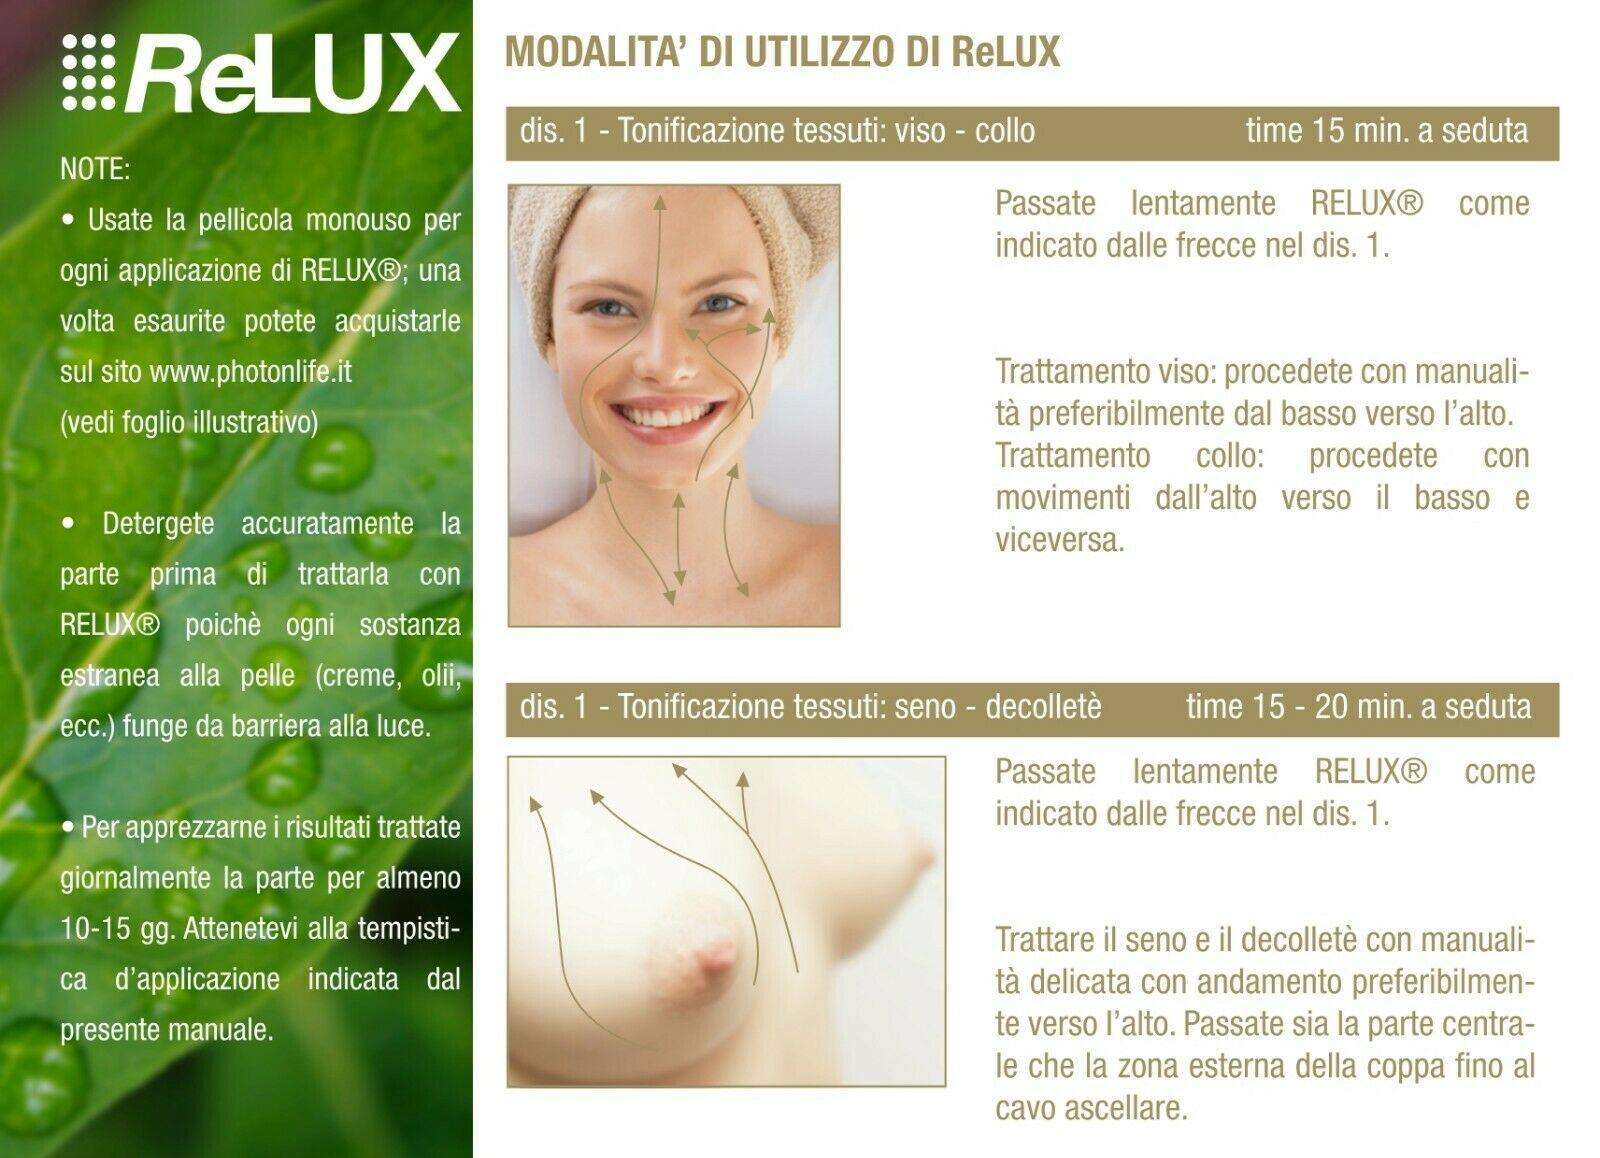 Photonlife RELUX Self Beauty - Massaggio Sportivo & Lifting Naturale - I migliori prodotti Made in Italy da Fiera di Monza Shop - Solo 289€! Acquista subito su Fiera di Monza Shop!